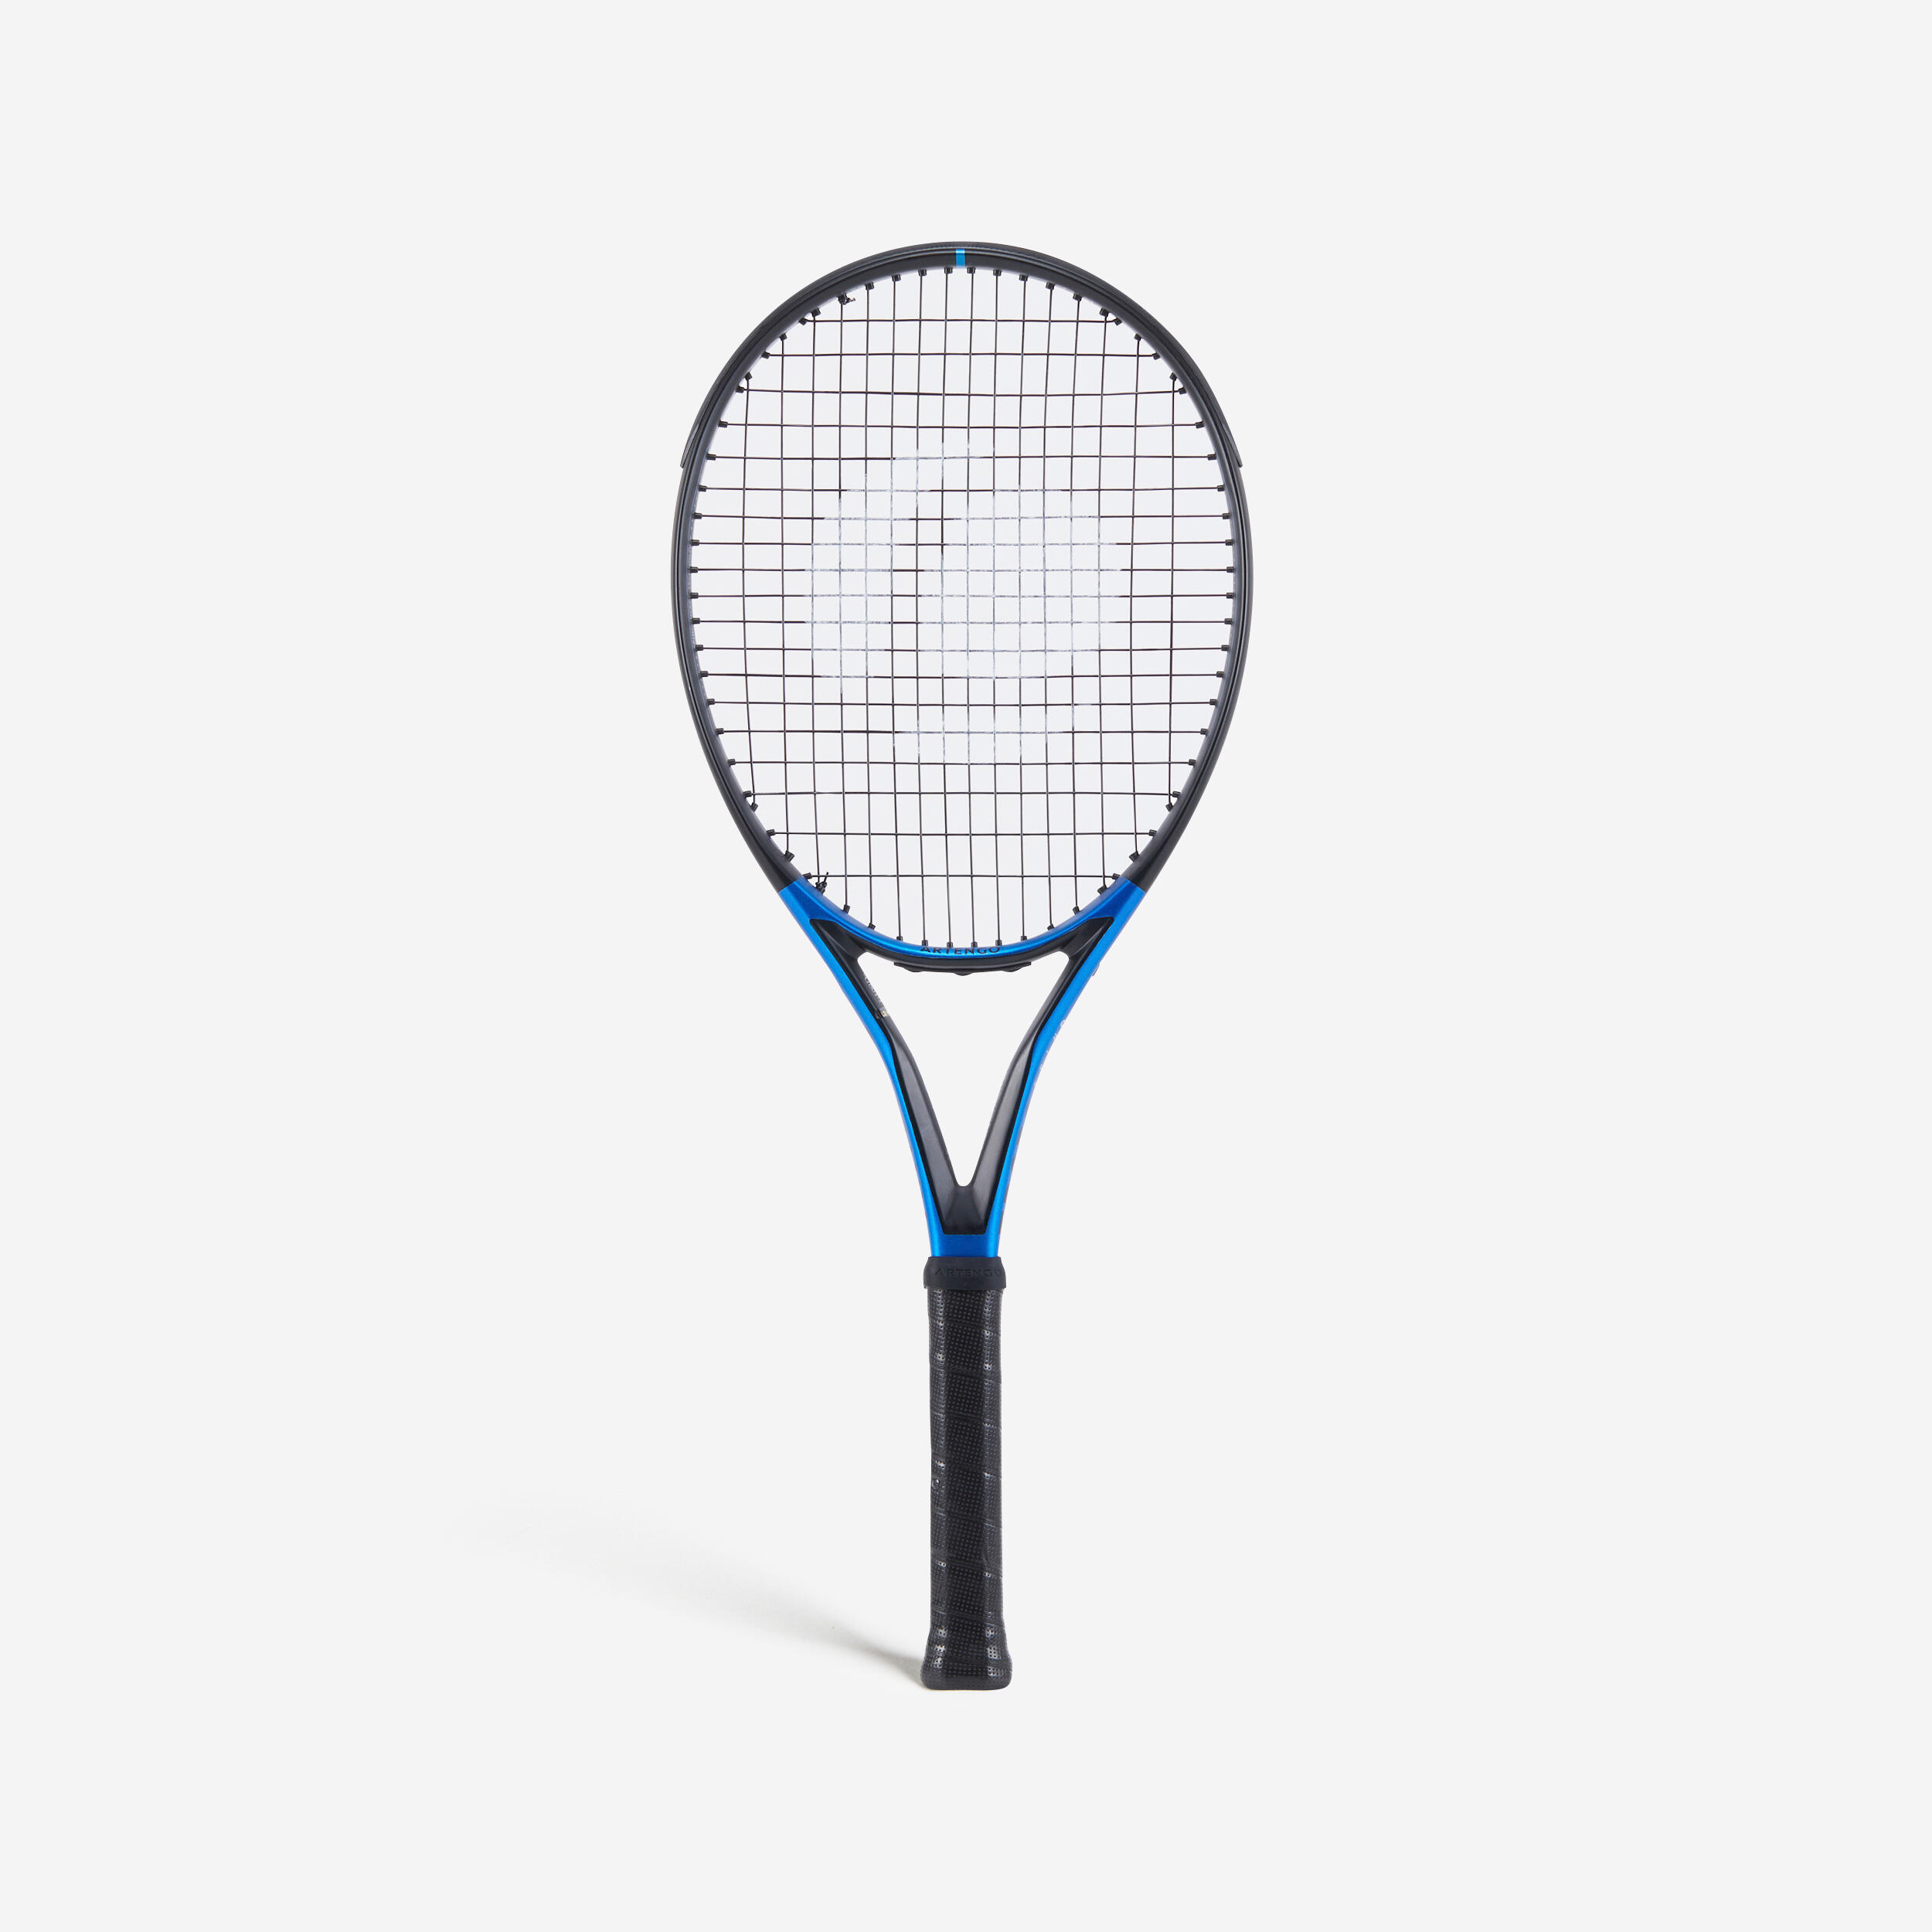 Tennisracket - Artengo Tr930 Spin Lite Vuxen Svart/blå 270 g